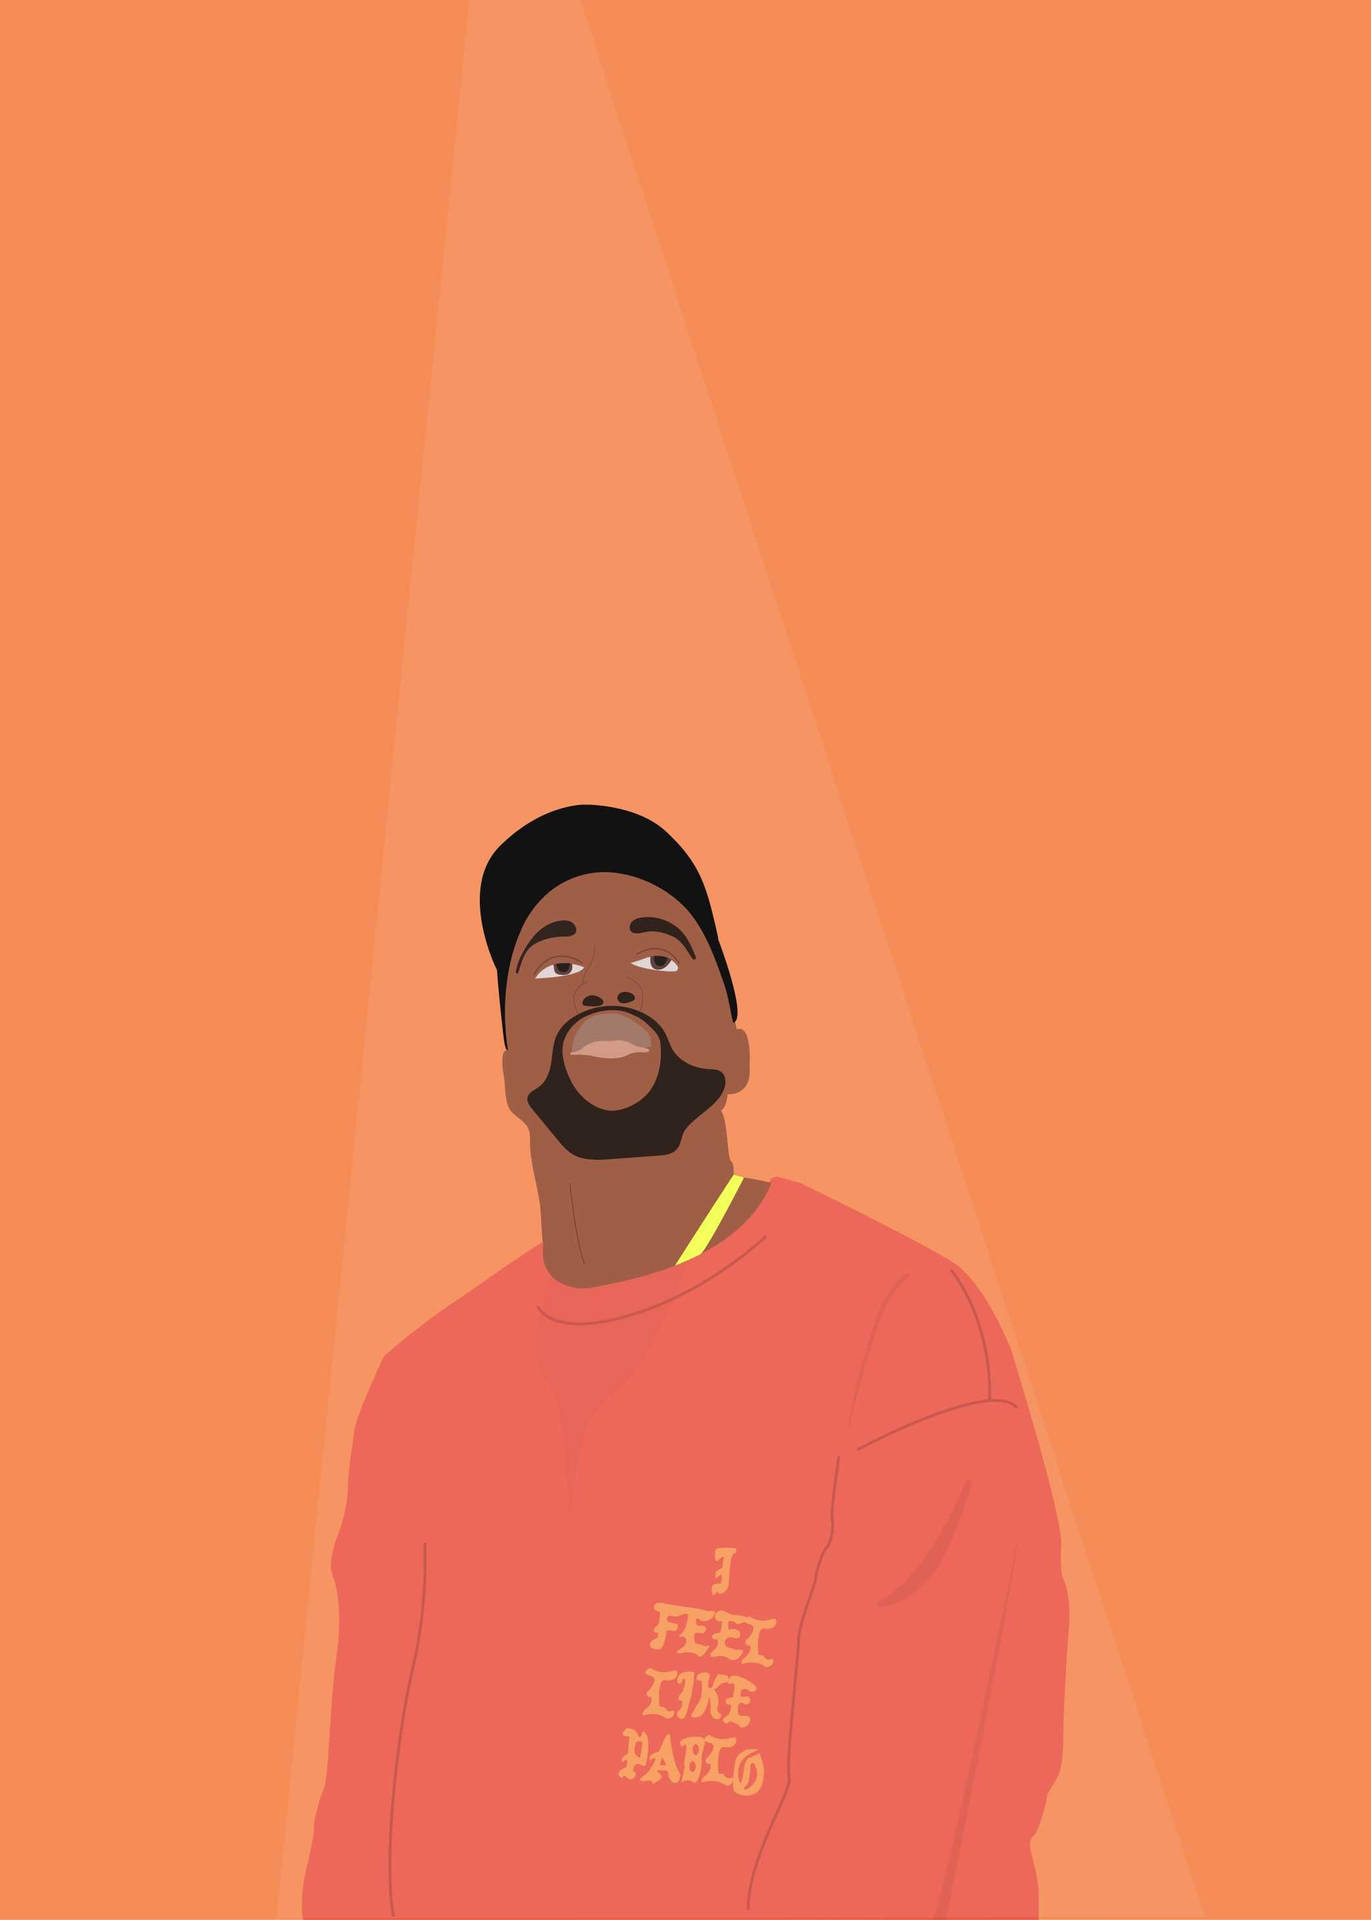 Kanye West Orange Illustration Background